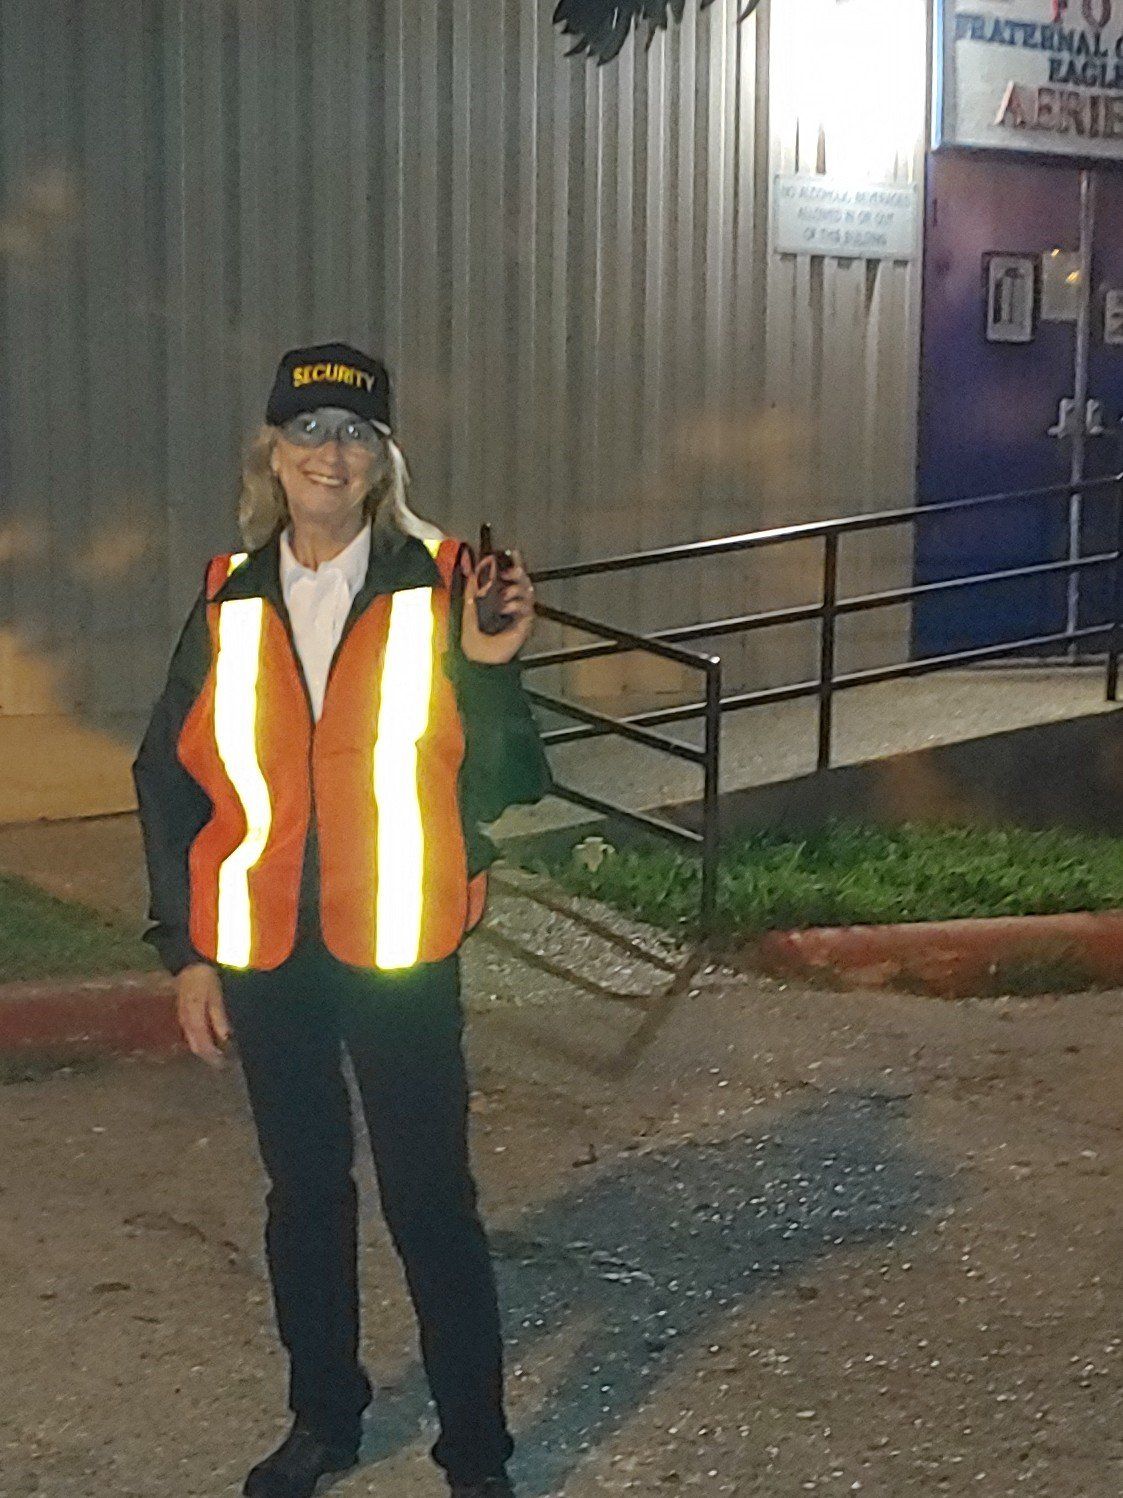 Security Guard San Antonio, TX